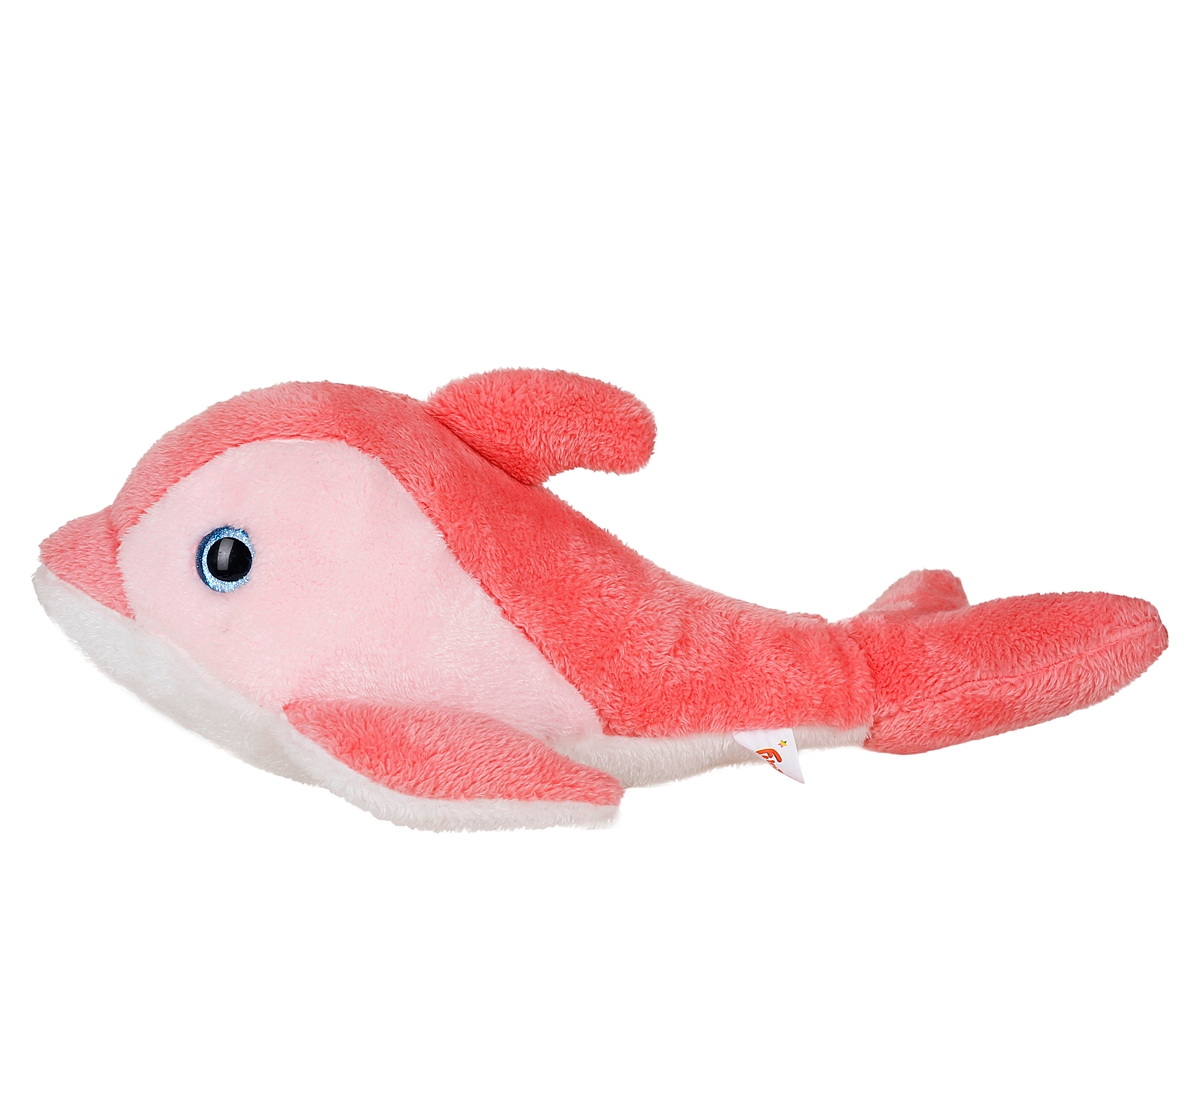 Fuzzbuzz | Fuzzbuzz Dolphin Plush Toy 40cm Pink 3Y+